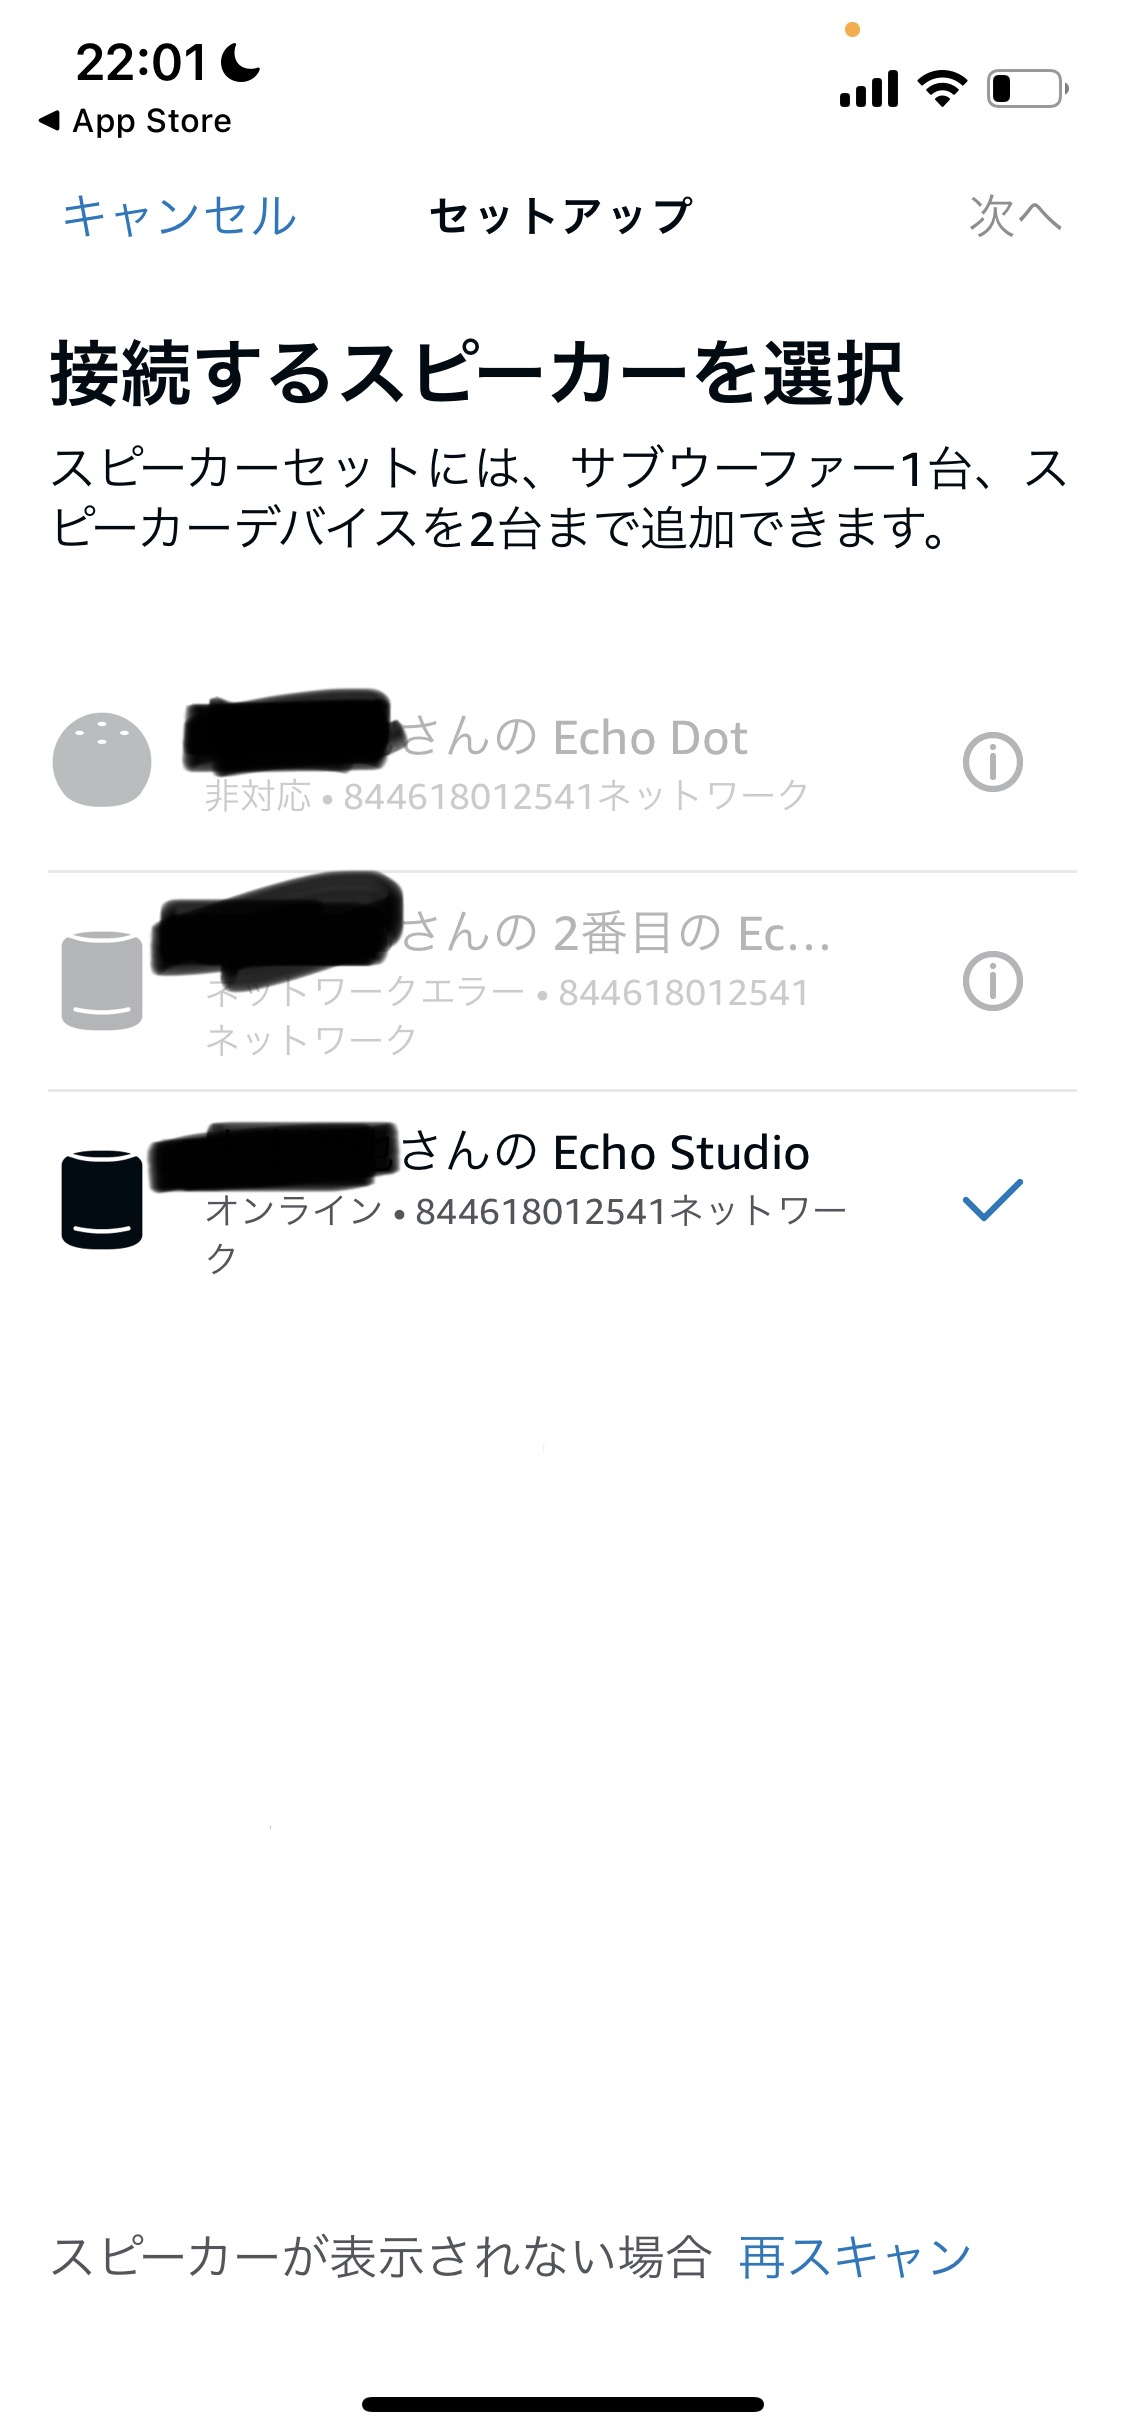 Echo Studio 2台から音楽再生したい